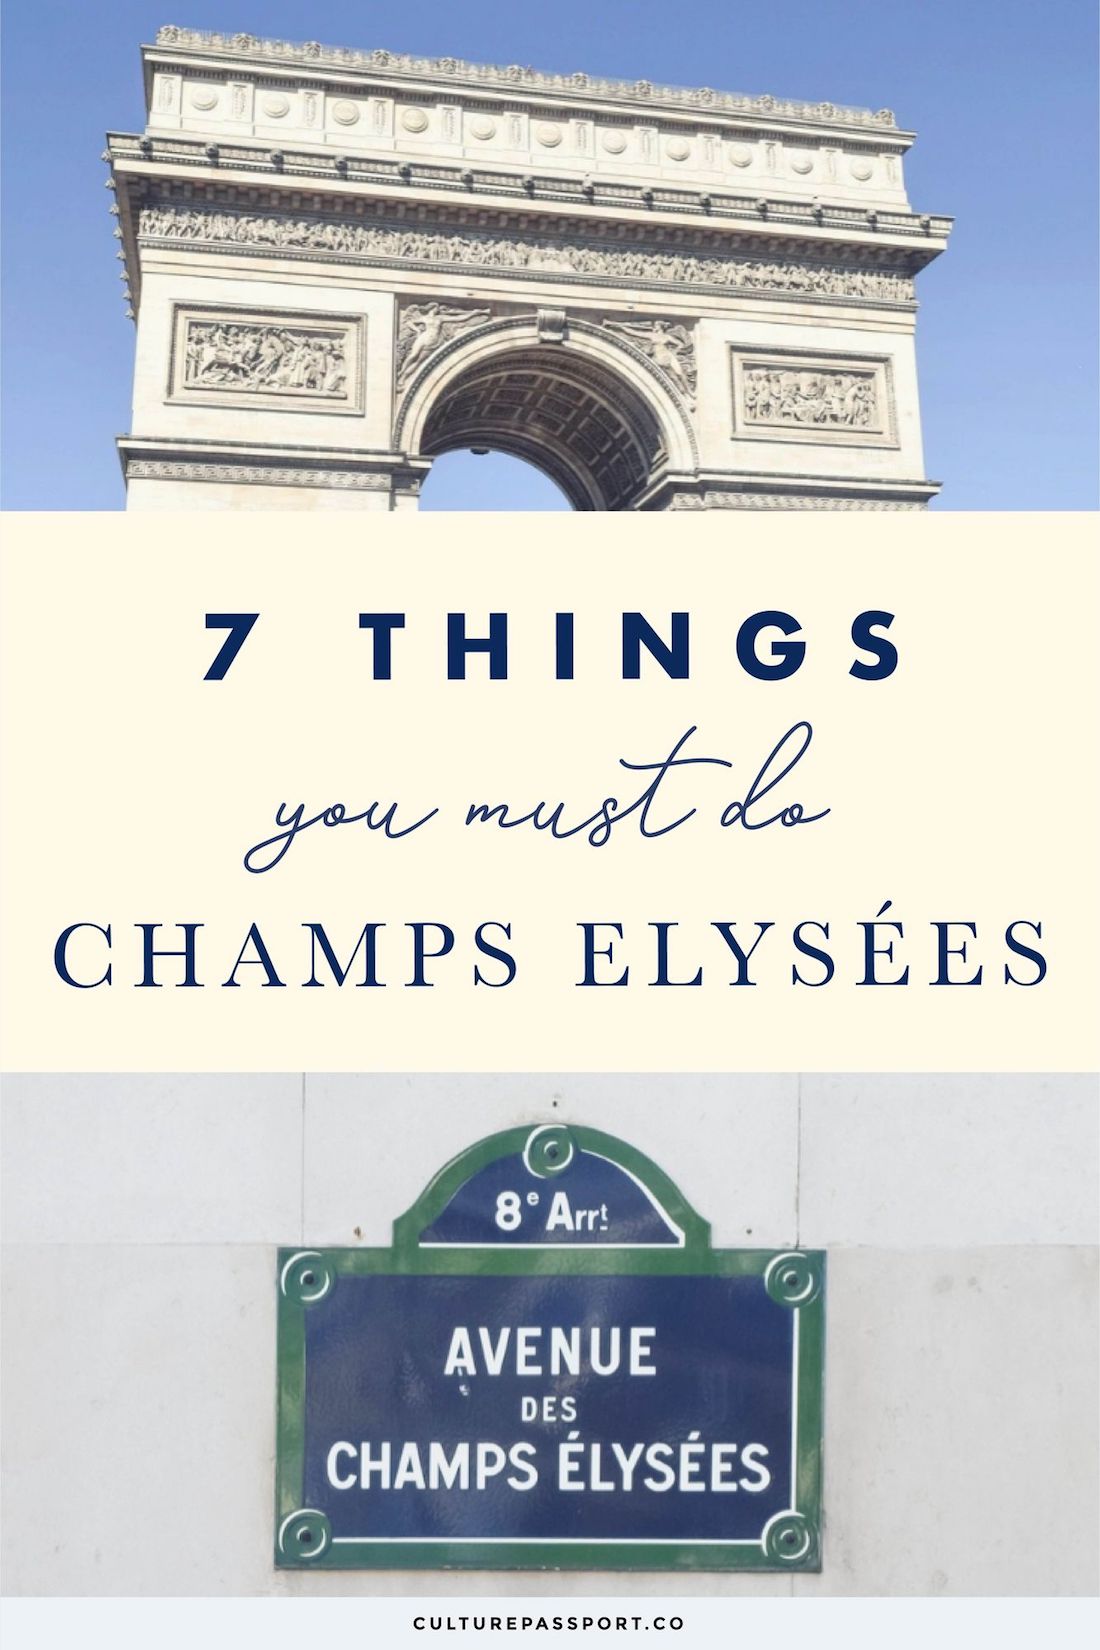 7 Things You Must Do On The Champs Élysées! #Paris #ParisTips #ParisGuide